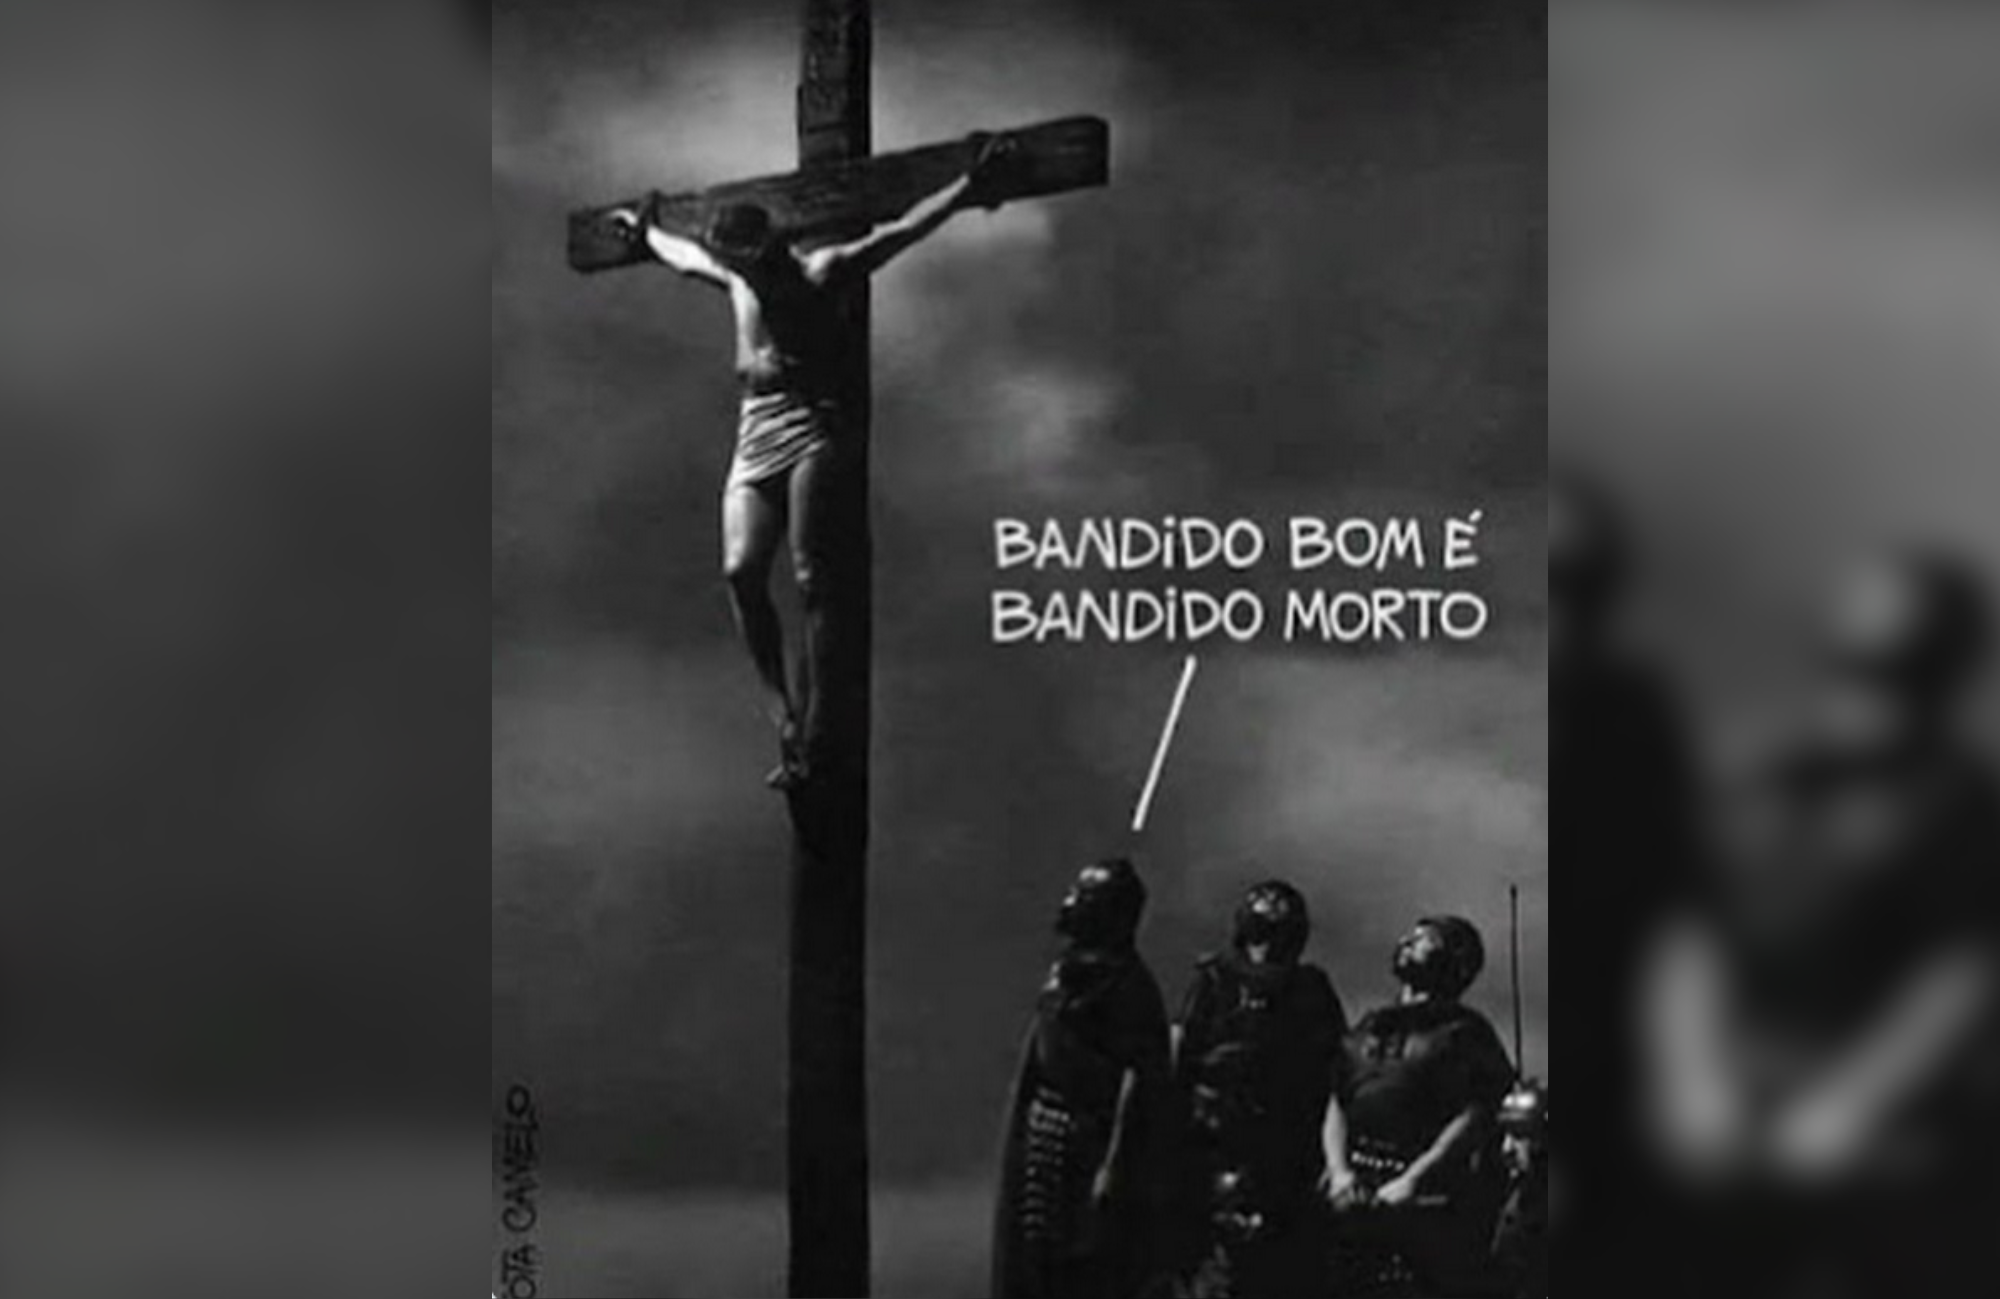 MTST recebe críticas após publicar Jesus na cruz com texto “bandido bom é bandido morto”